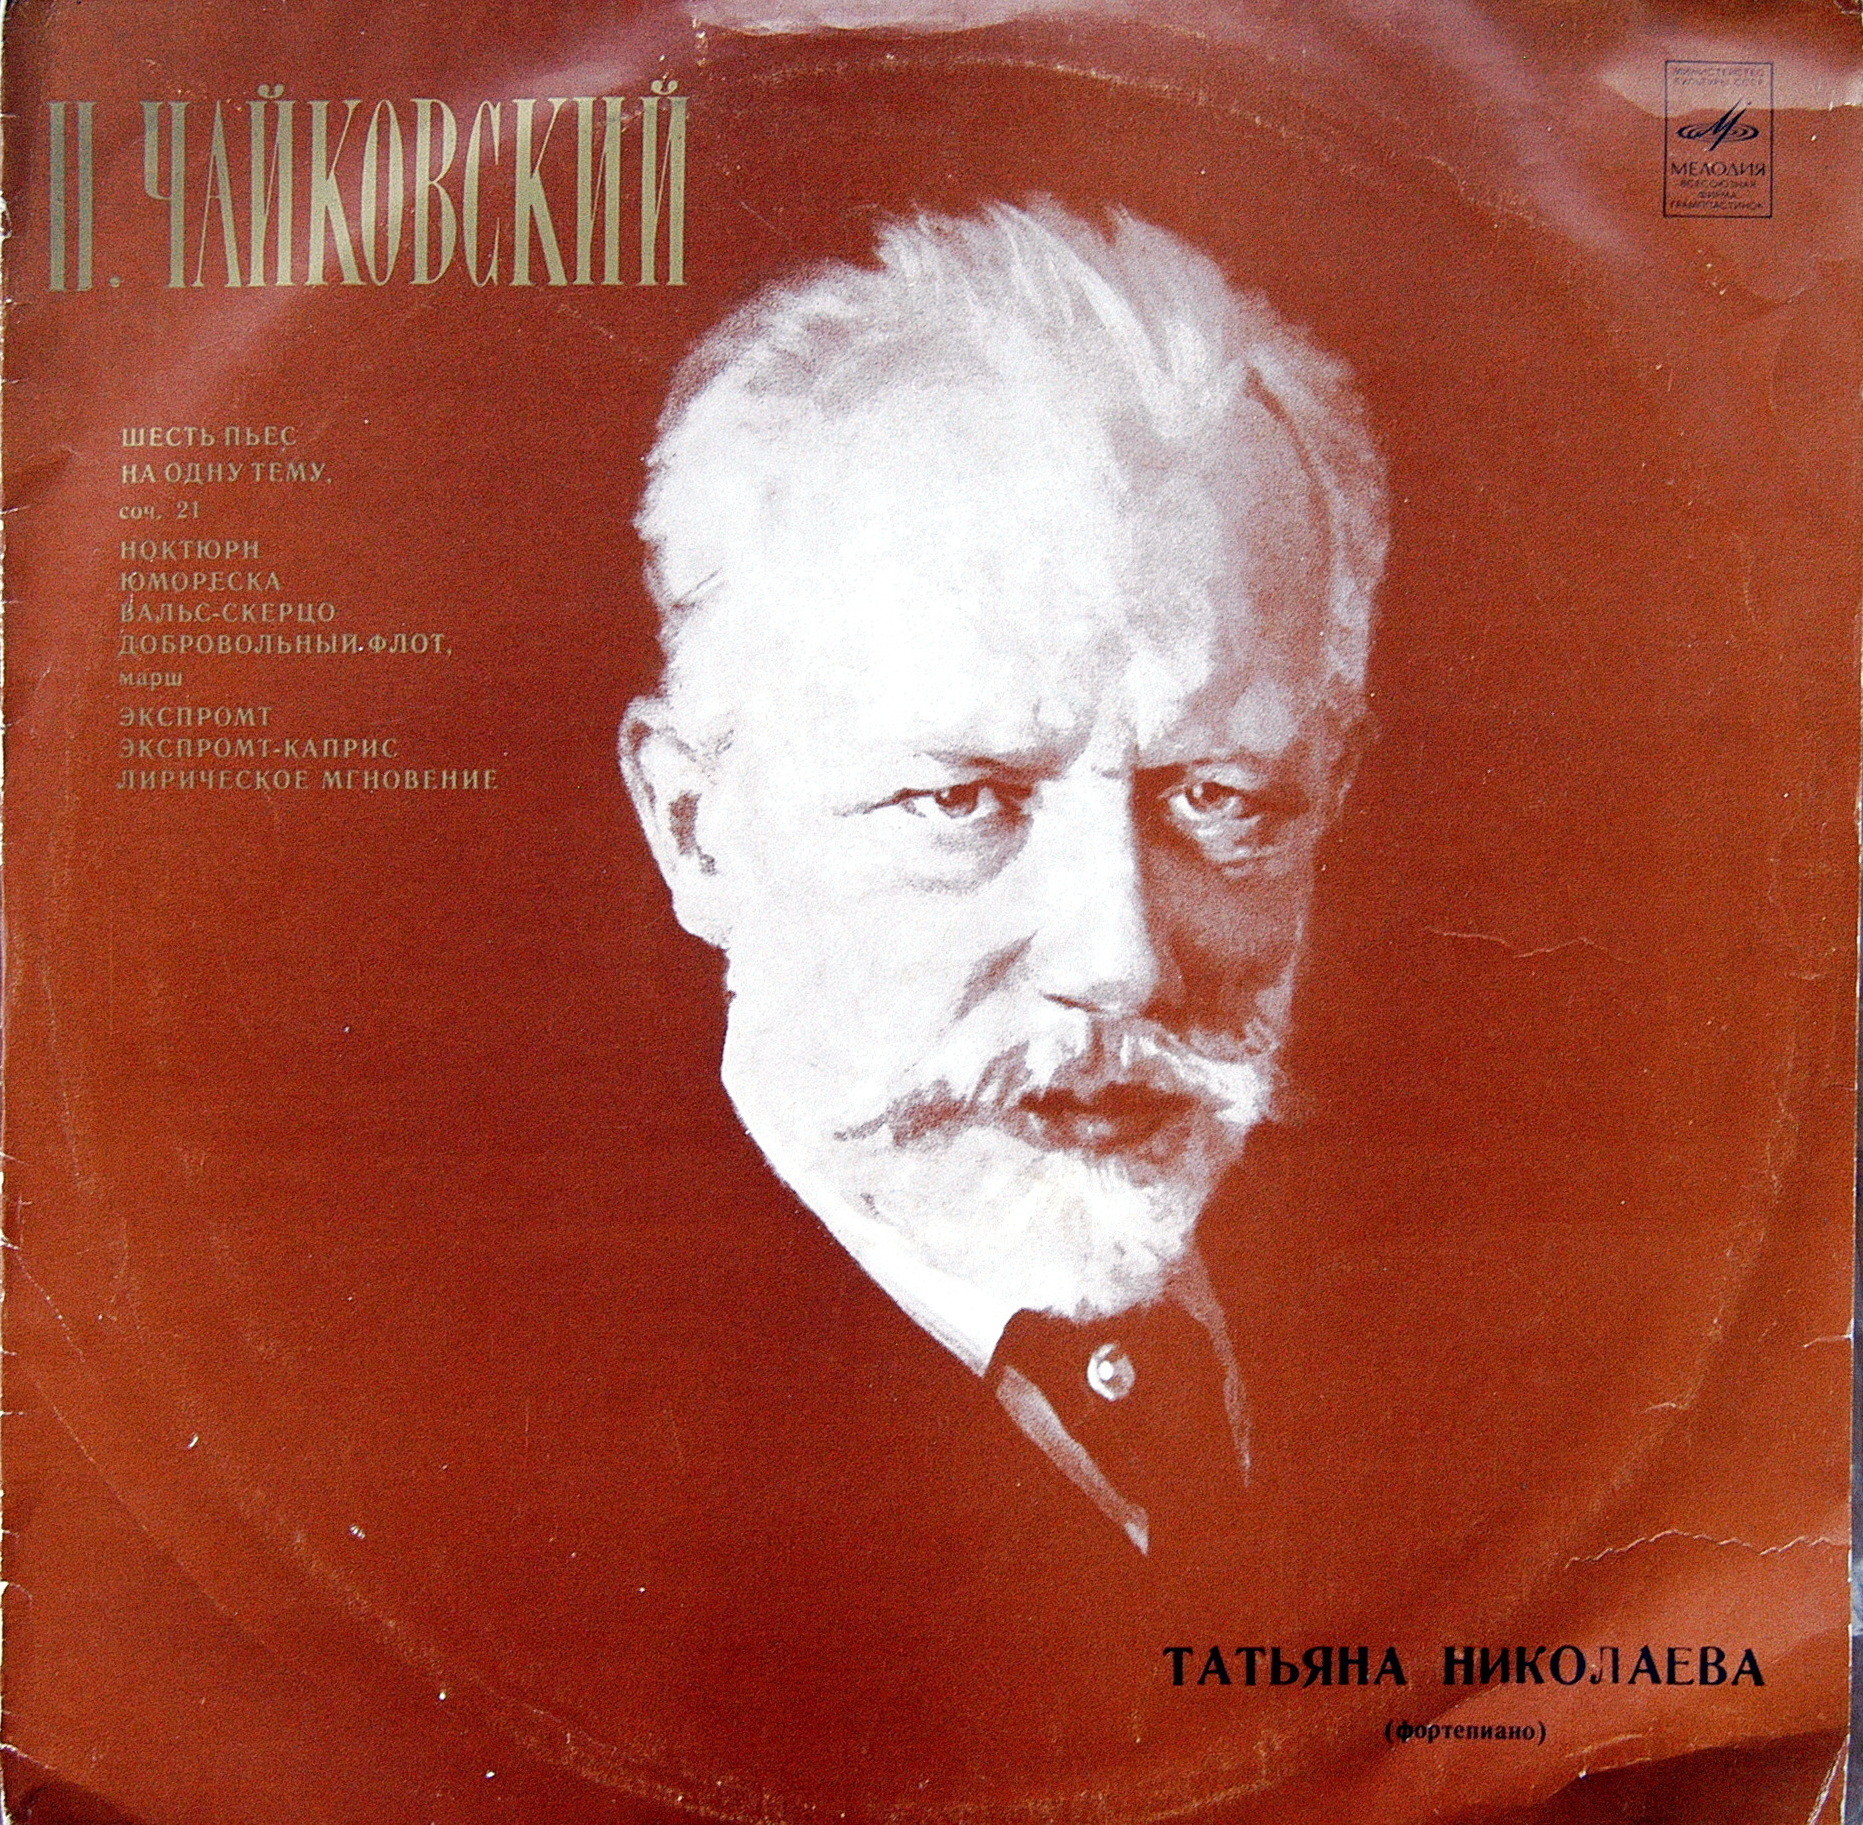 П. ЧАЙКОВСКИЙ (1840-1893) Фортепианные произведения (Т. Николаева)